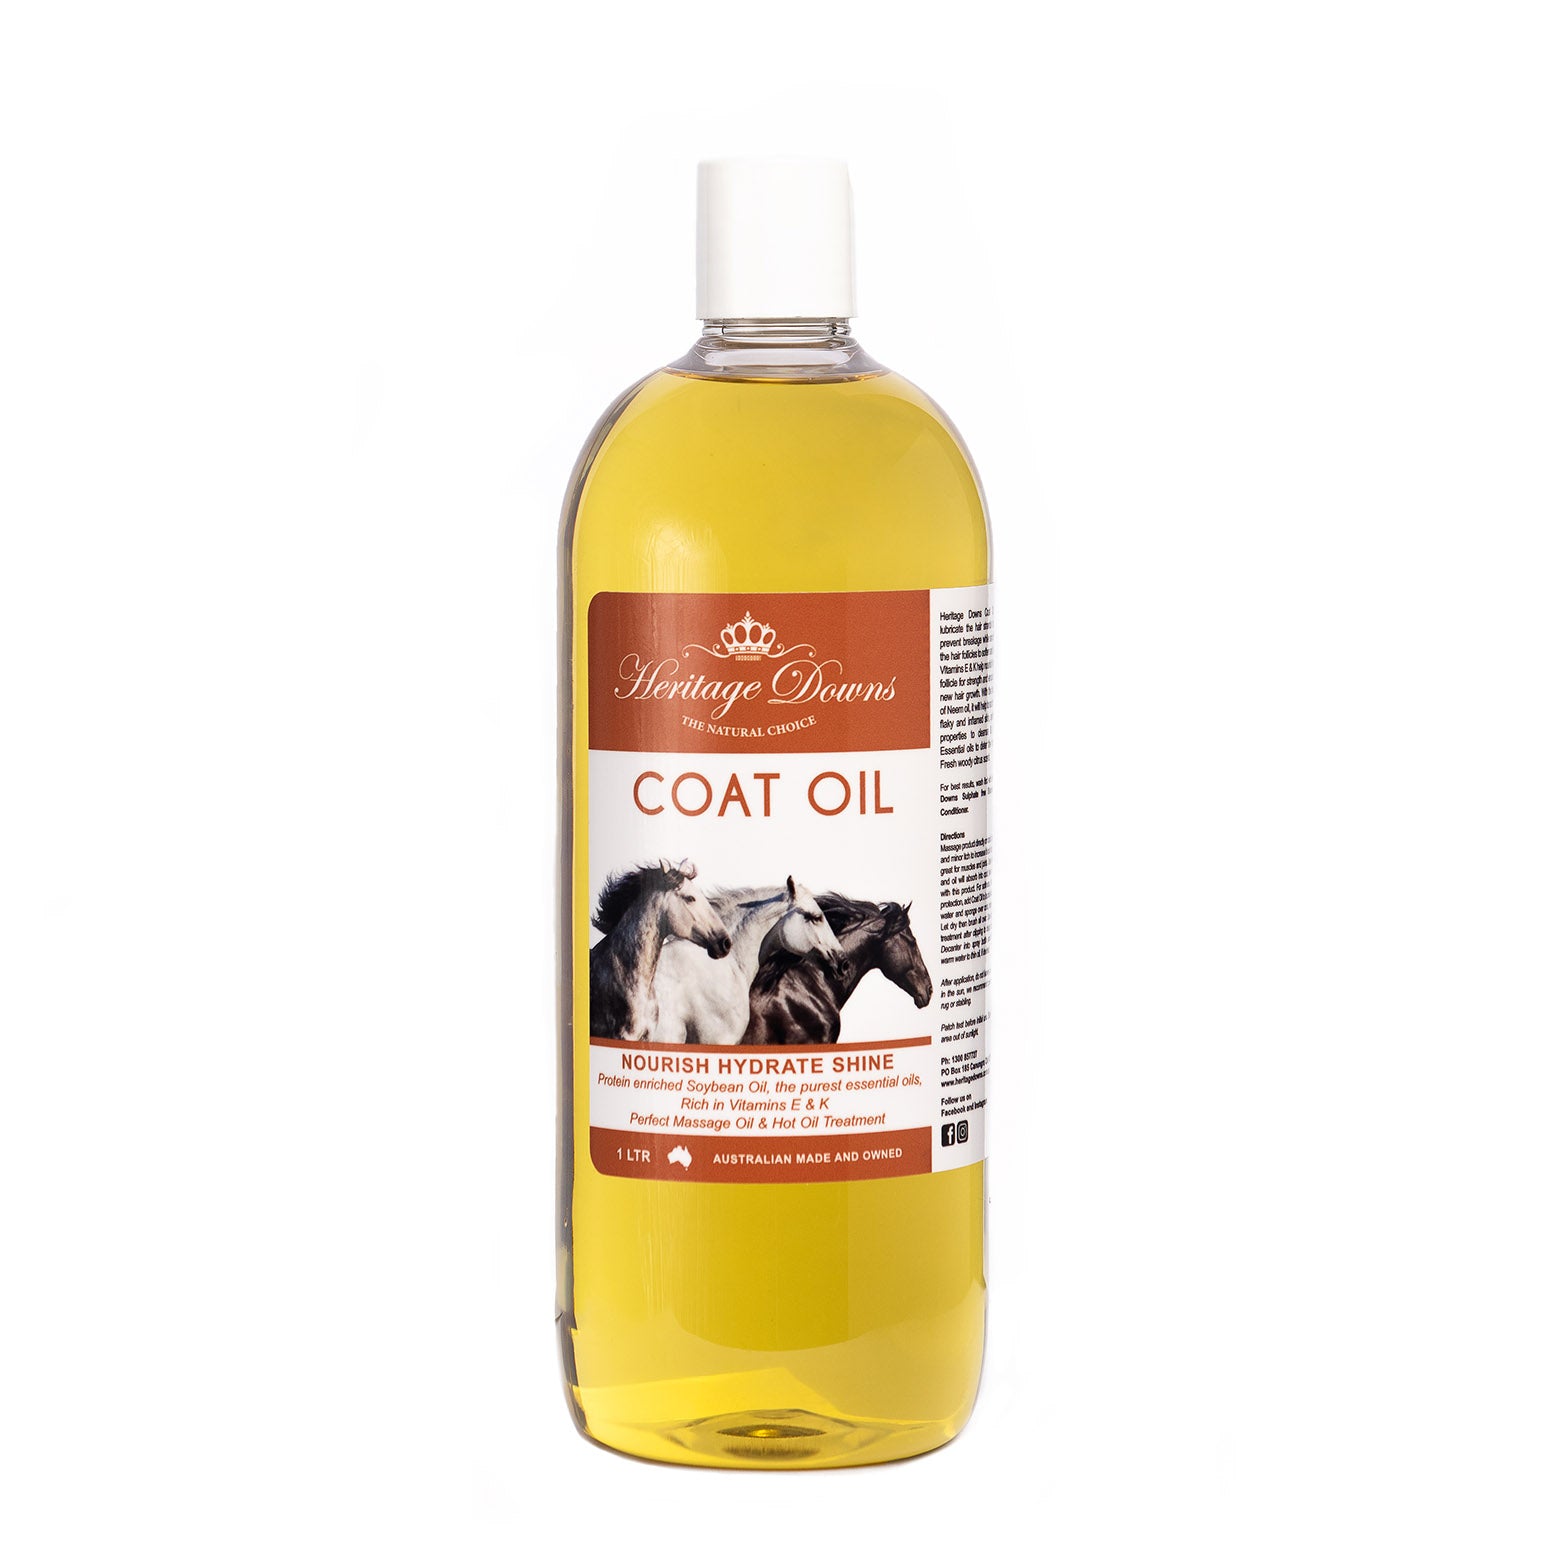 Coat Oil